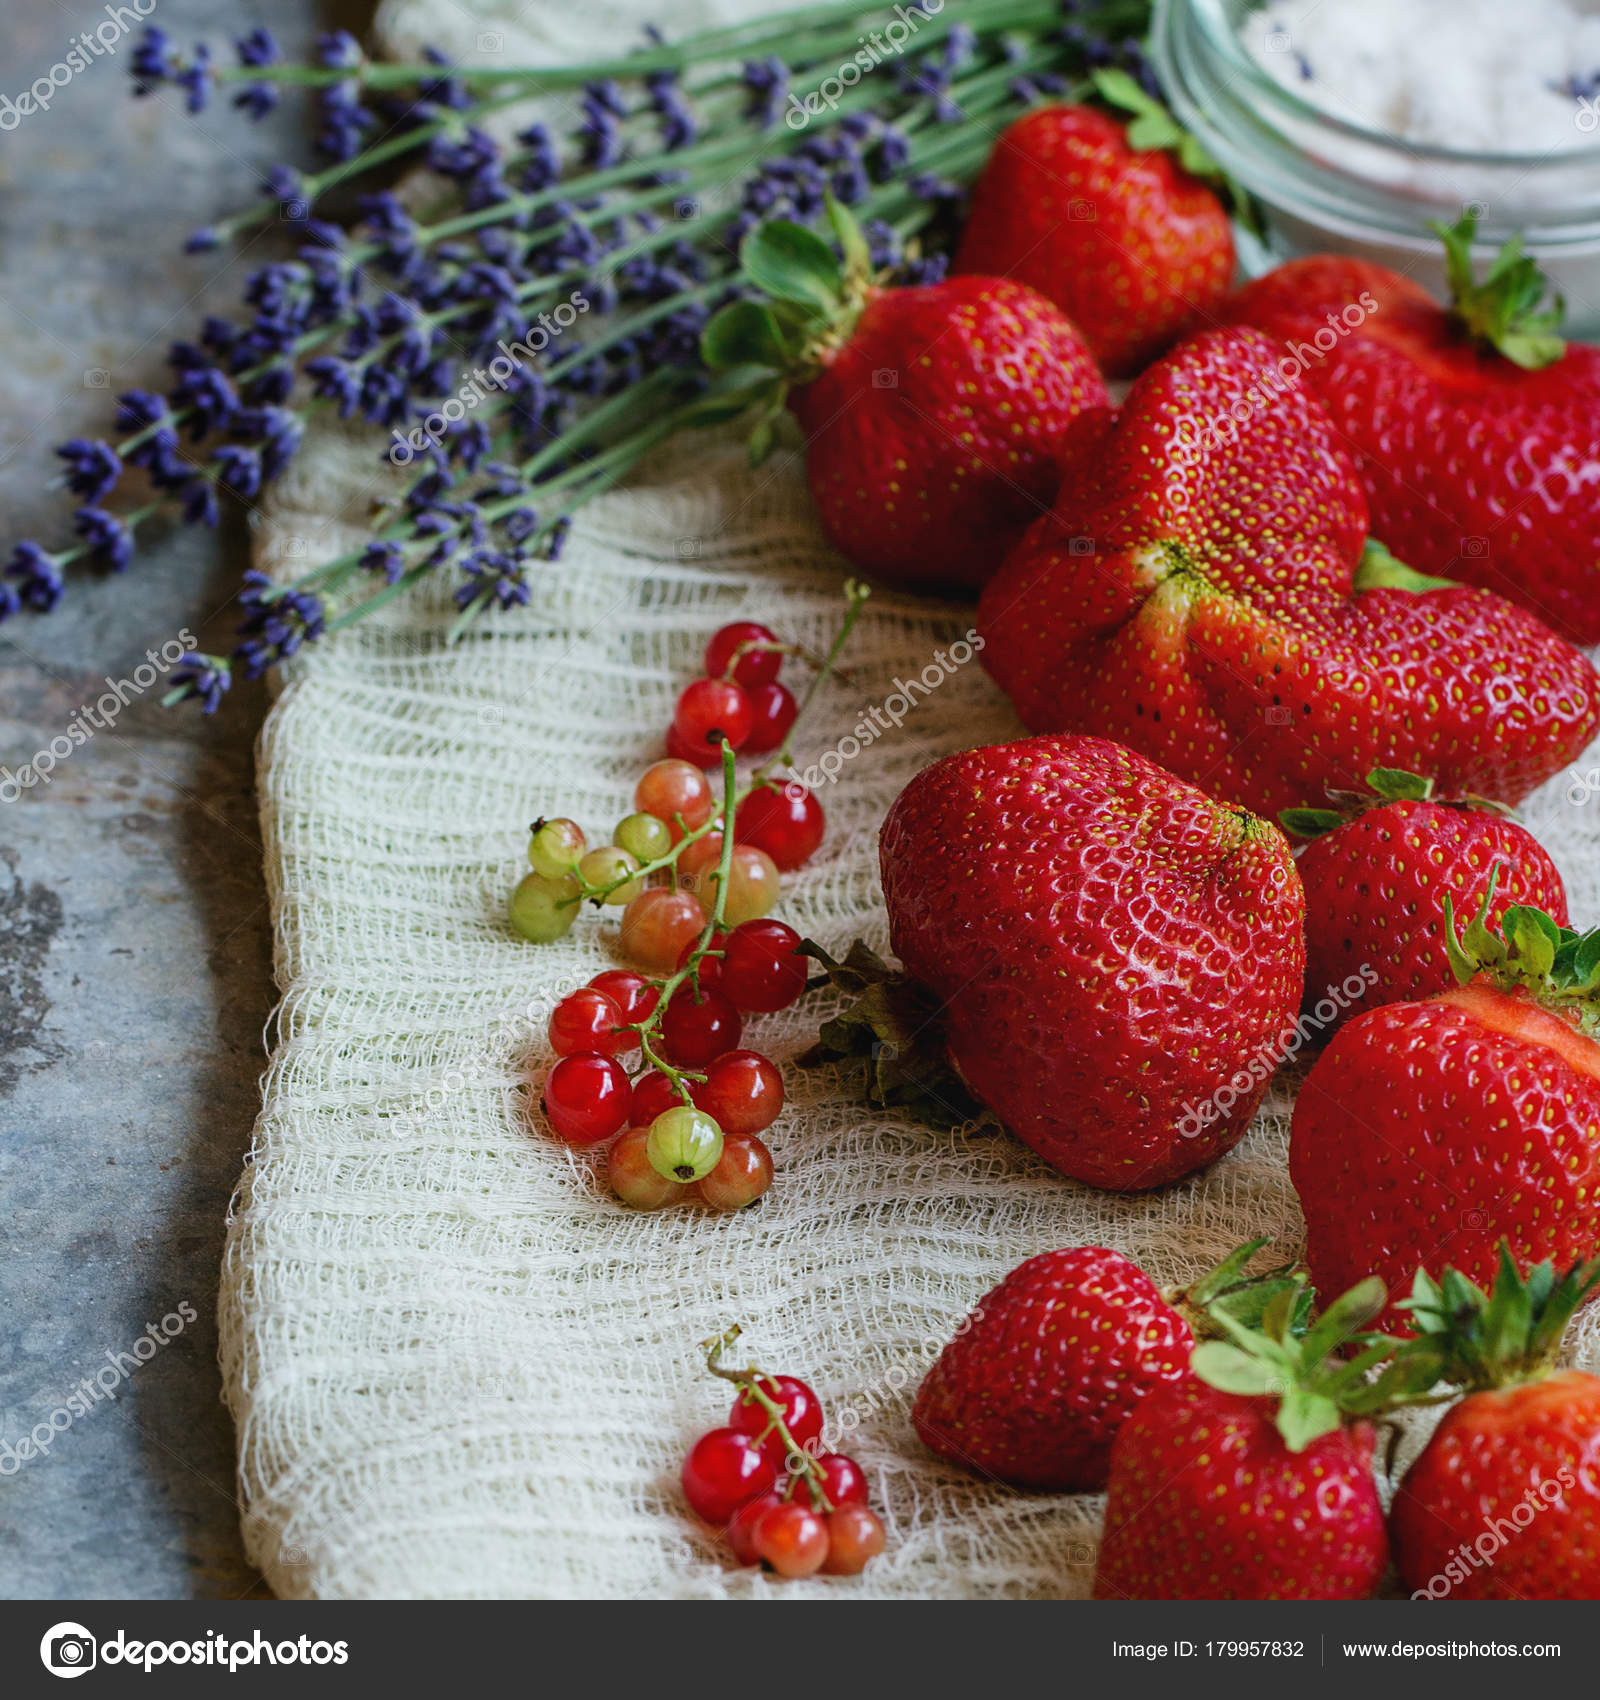 Strawberries for jam — Stock Photo © NatashaBreen #179957832